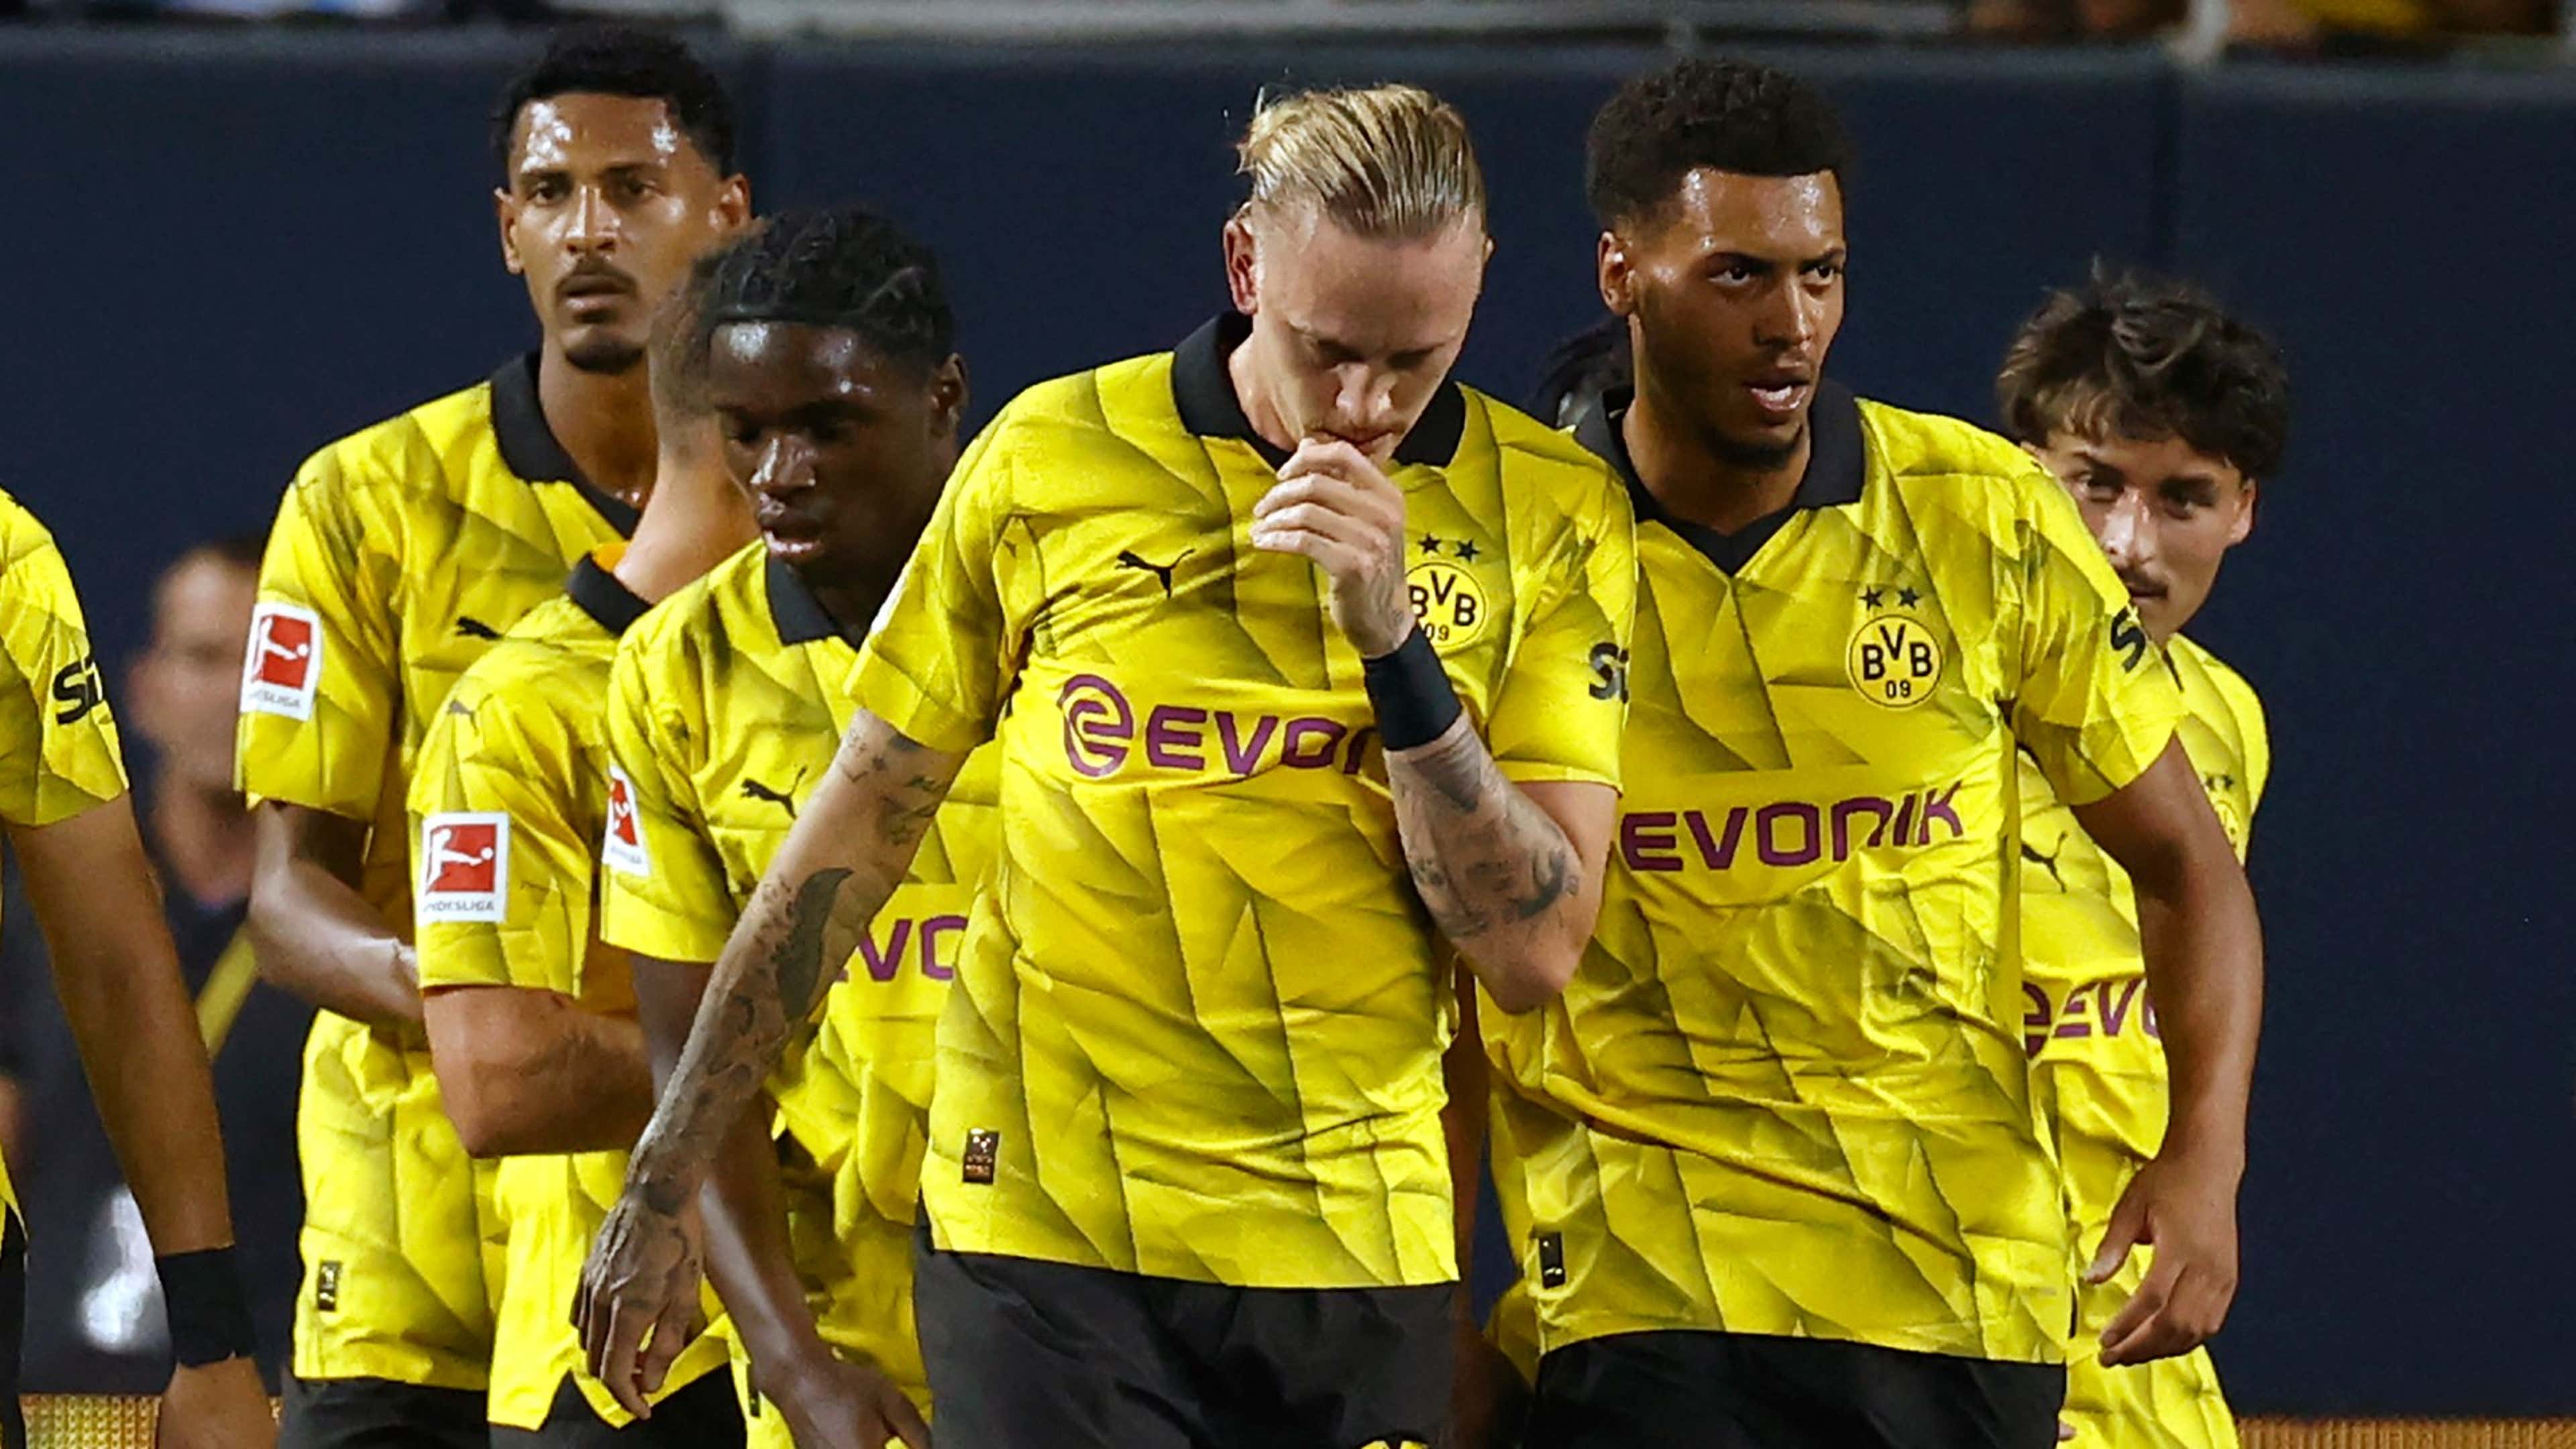 Borussia Dortmund x Milan: onde assistir ao vivo e horário do jogo